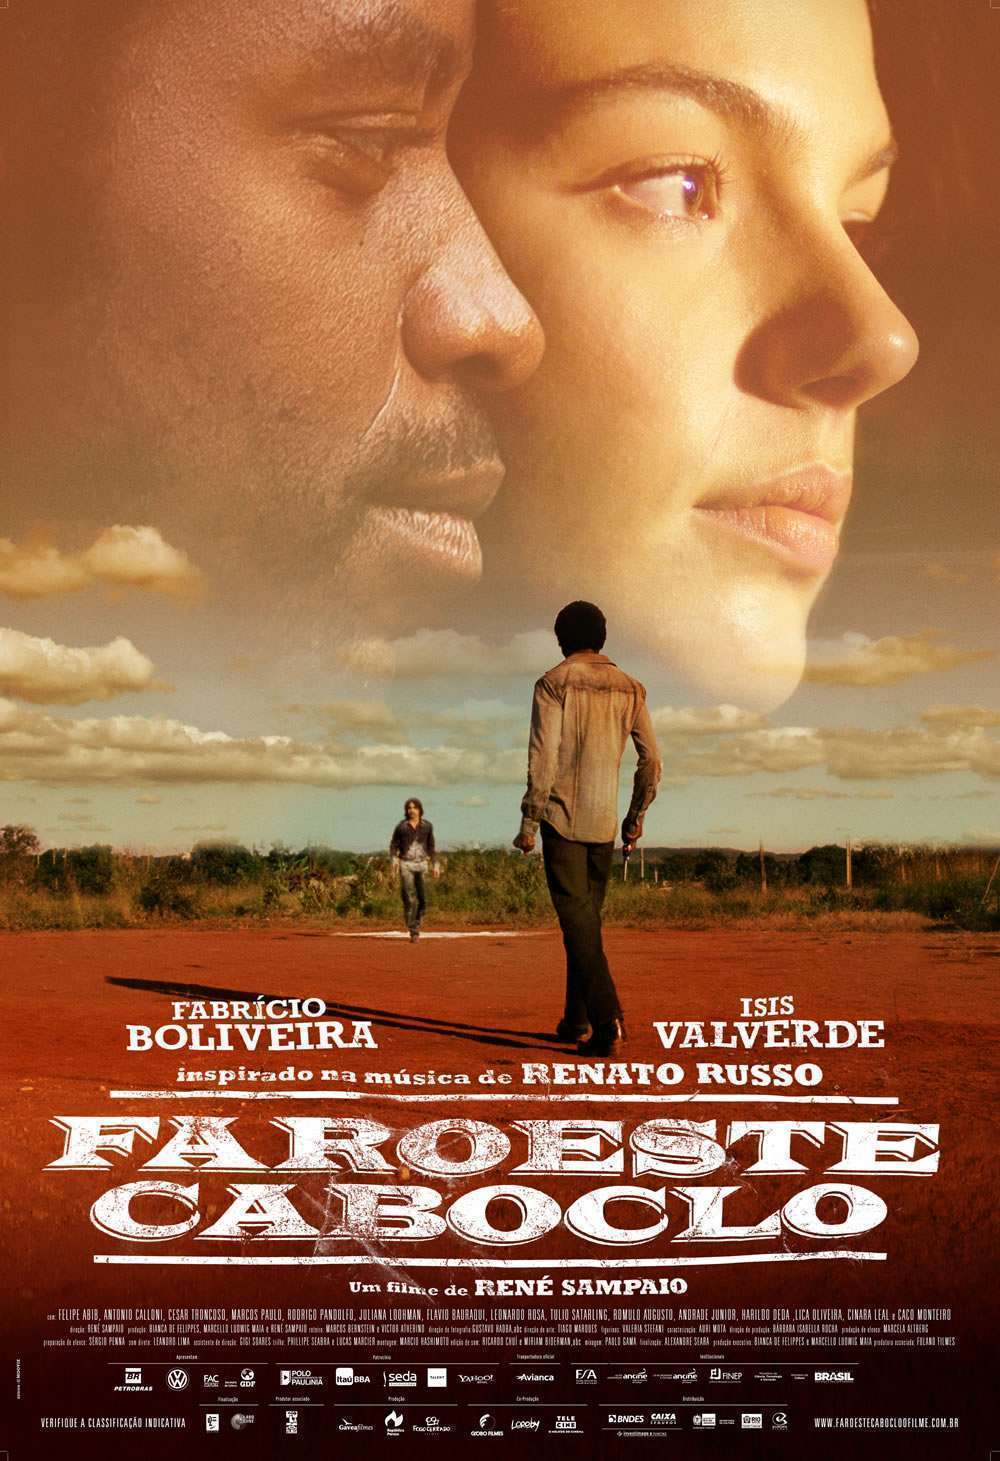 Faroeste Cabloco poster